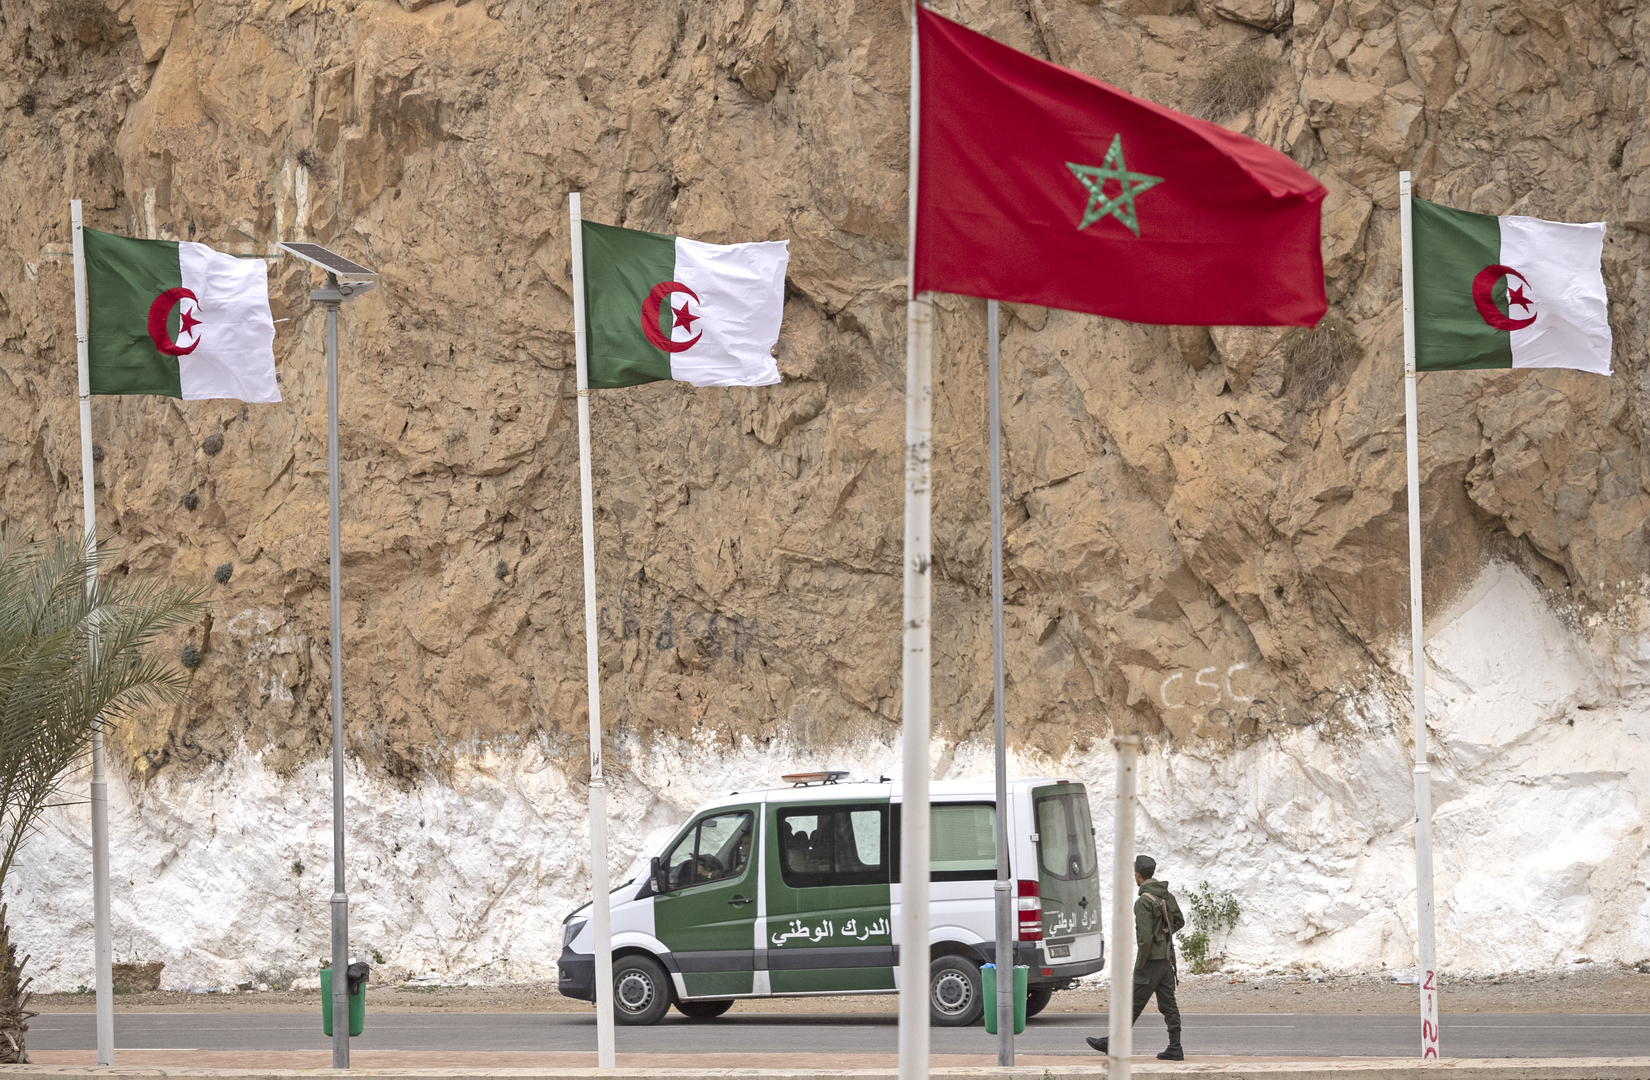 السفير التركي لدى المغرب يتحدث عن  أطراف ثالثة تستفيد من صراع الصحراء بين الرباط والجزائر